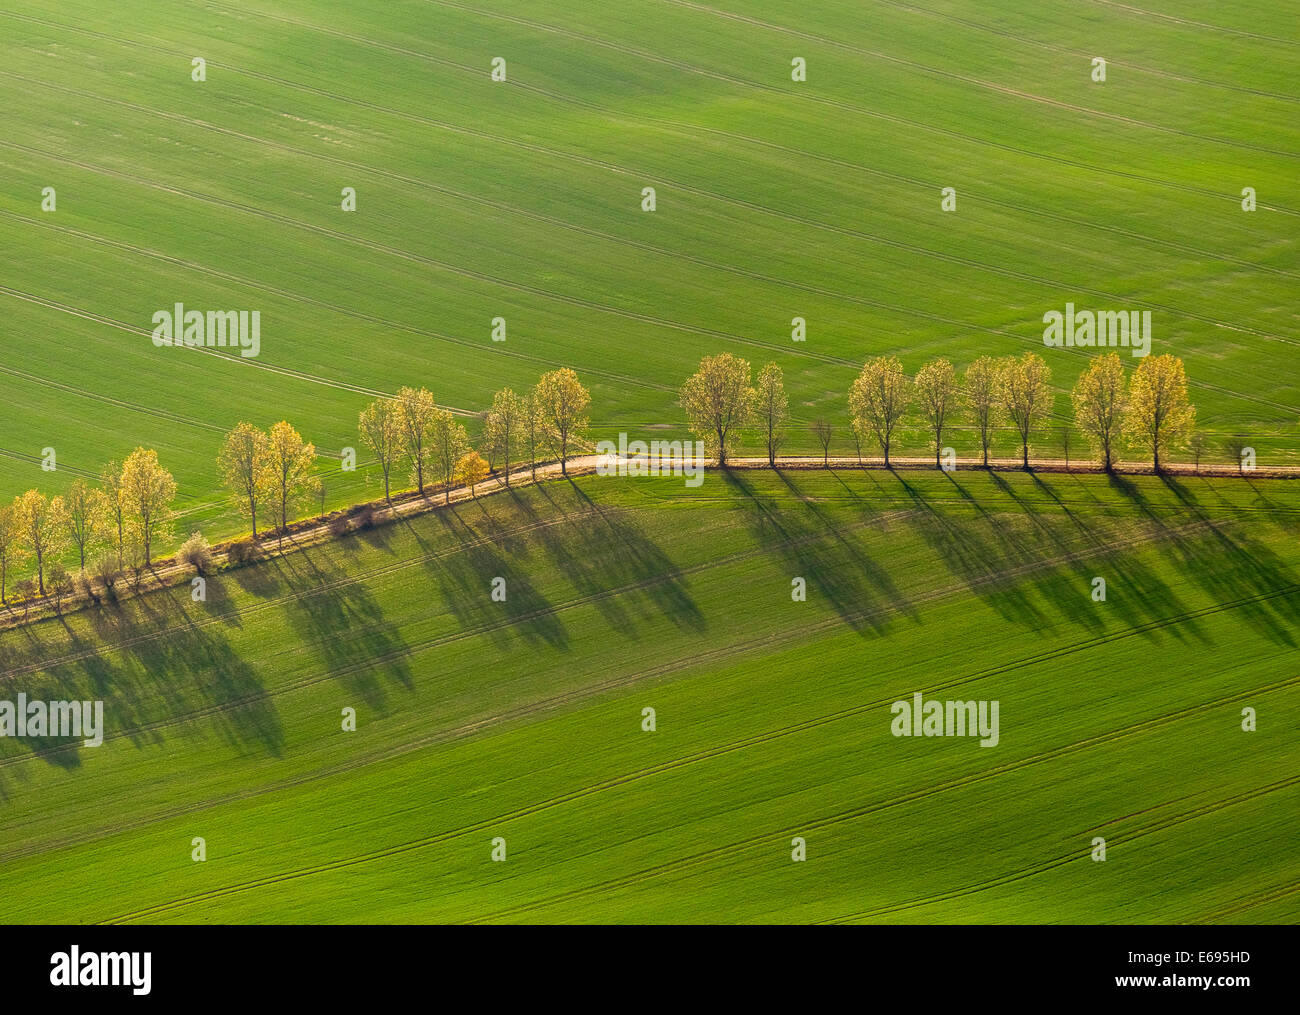 Vue aérienne, country road, avenue bordée d'entre les champs verts, Stavenhagen, Mecklembourg-Poméranie-Occidentale, Allemagne Banque D'Images